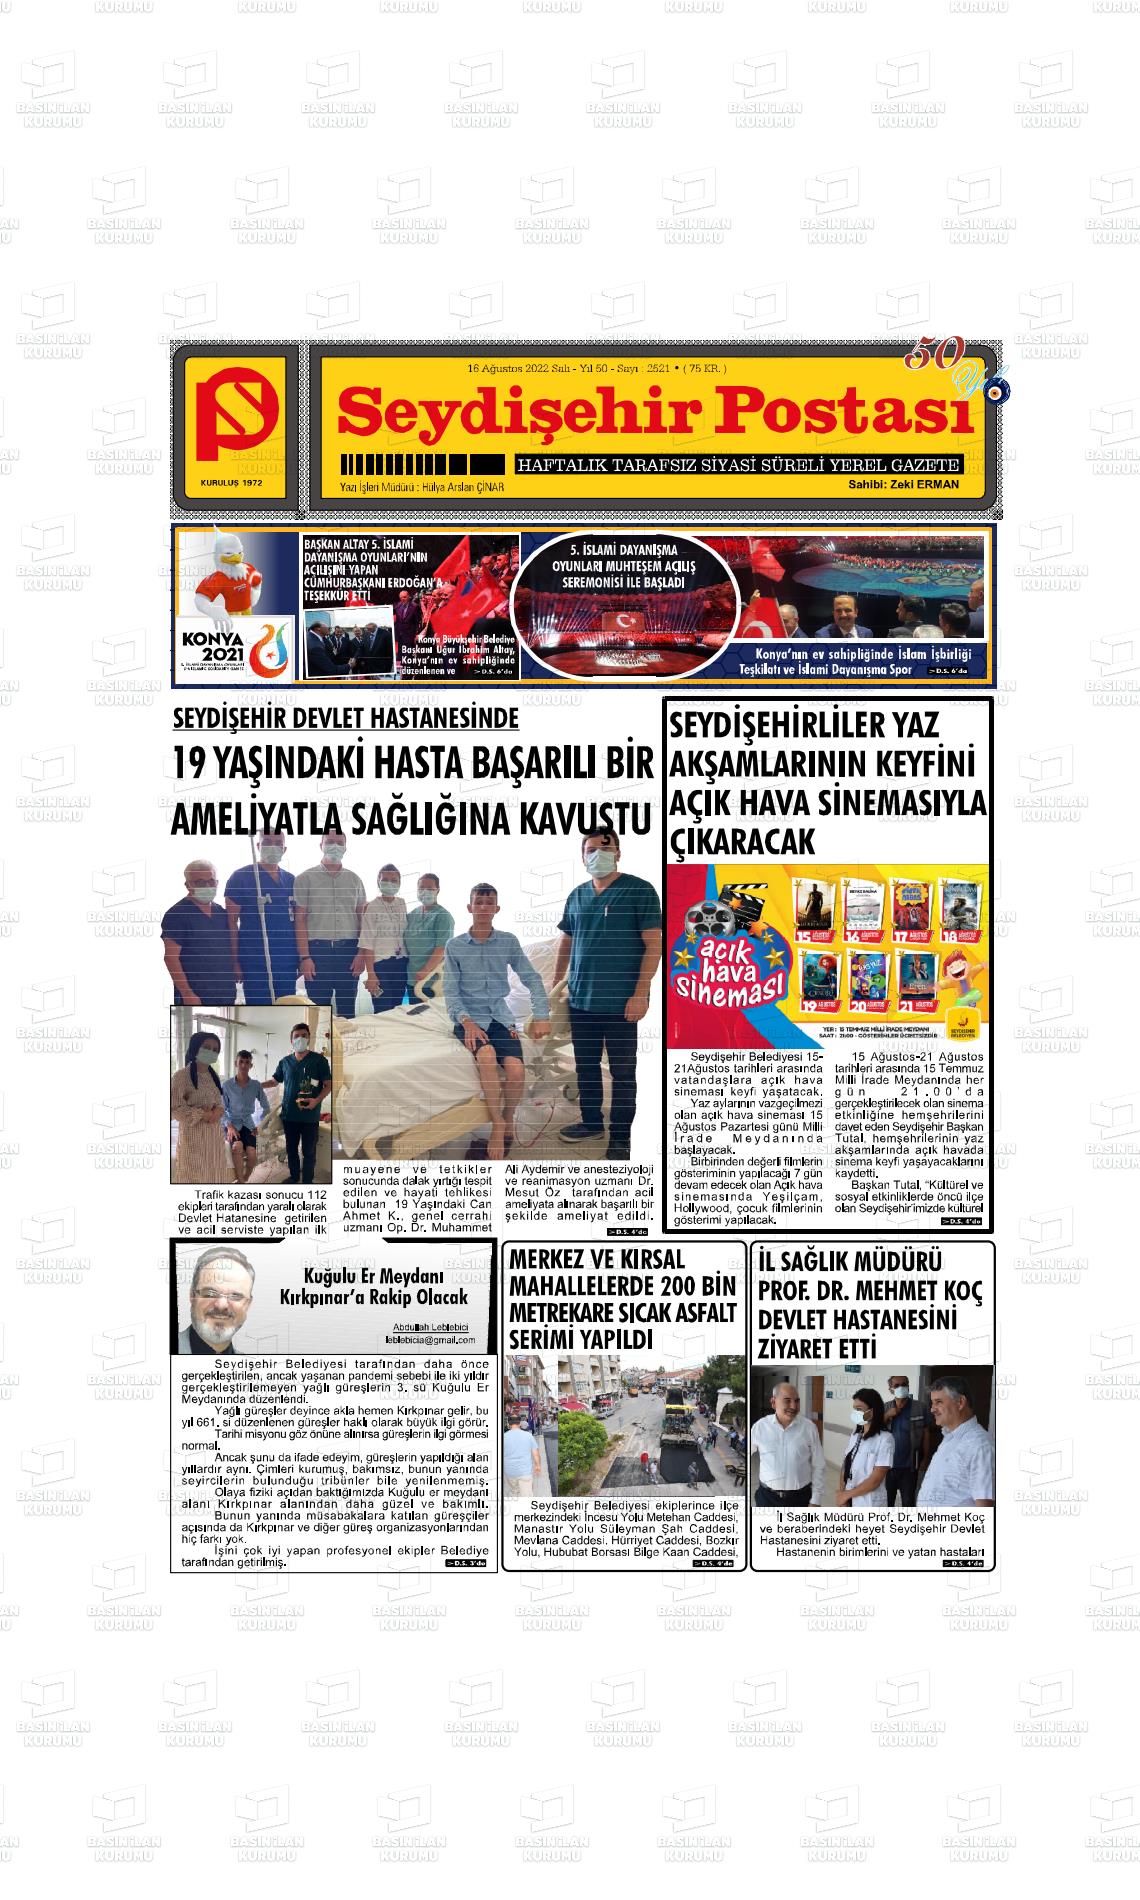 16 Ağustos 2022 Seydişehir Postası Gazete Manşeti